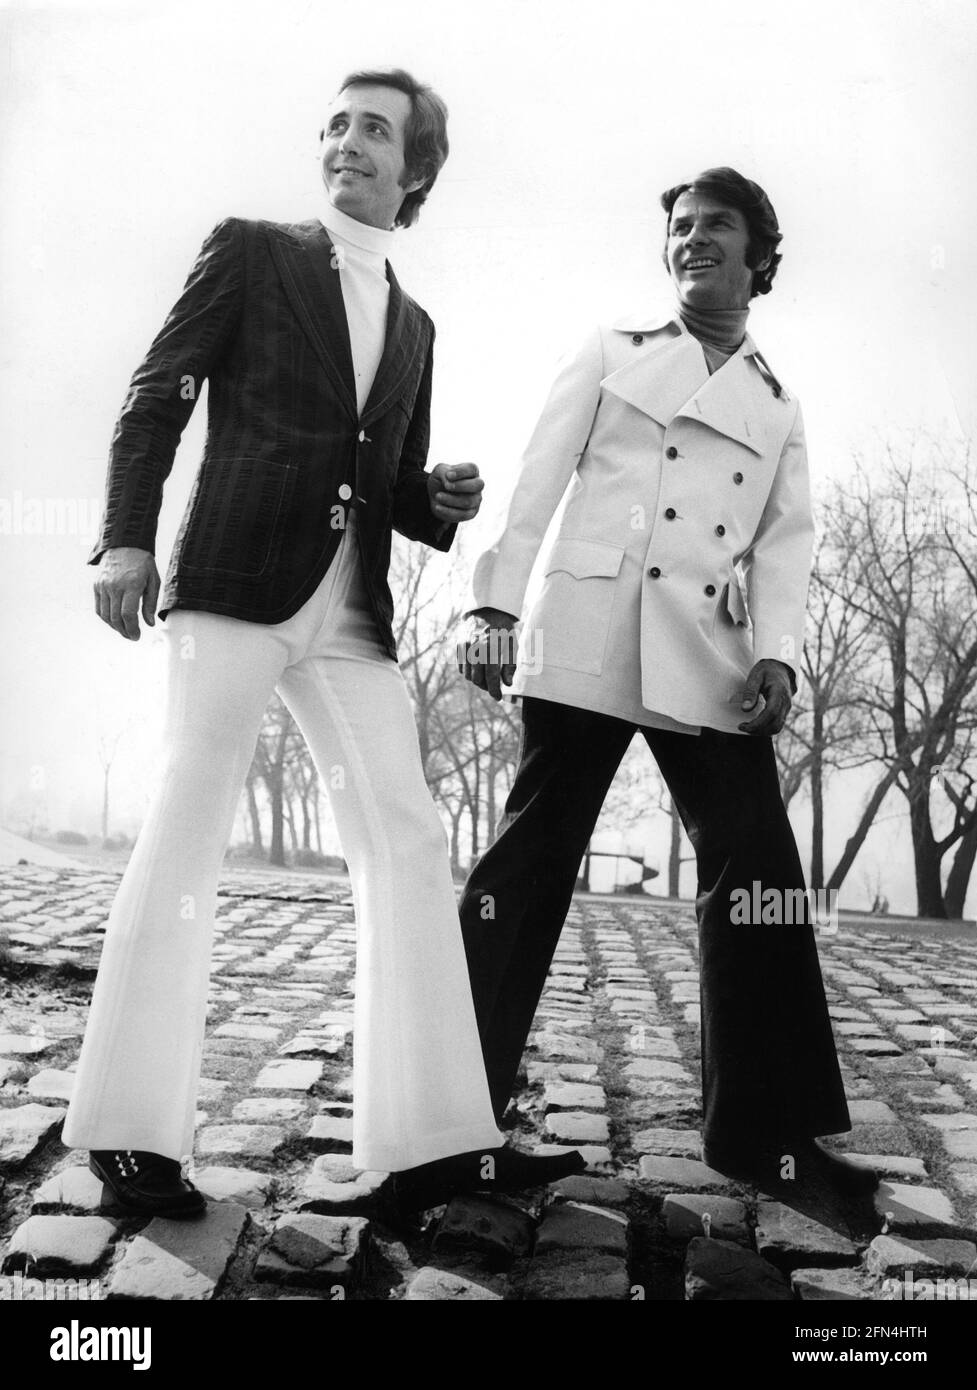 Mode, 70er Jahre, Herrenmode, zwei Männer in Fackeln und Jacken,  ZUSÄTZLICHE RECHTE-CLEARANCE-INFO-NOT-AVAILABLE Stockfotografie - Alamy